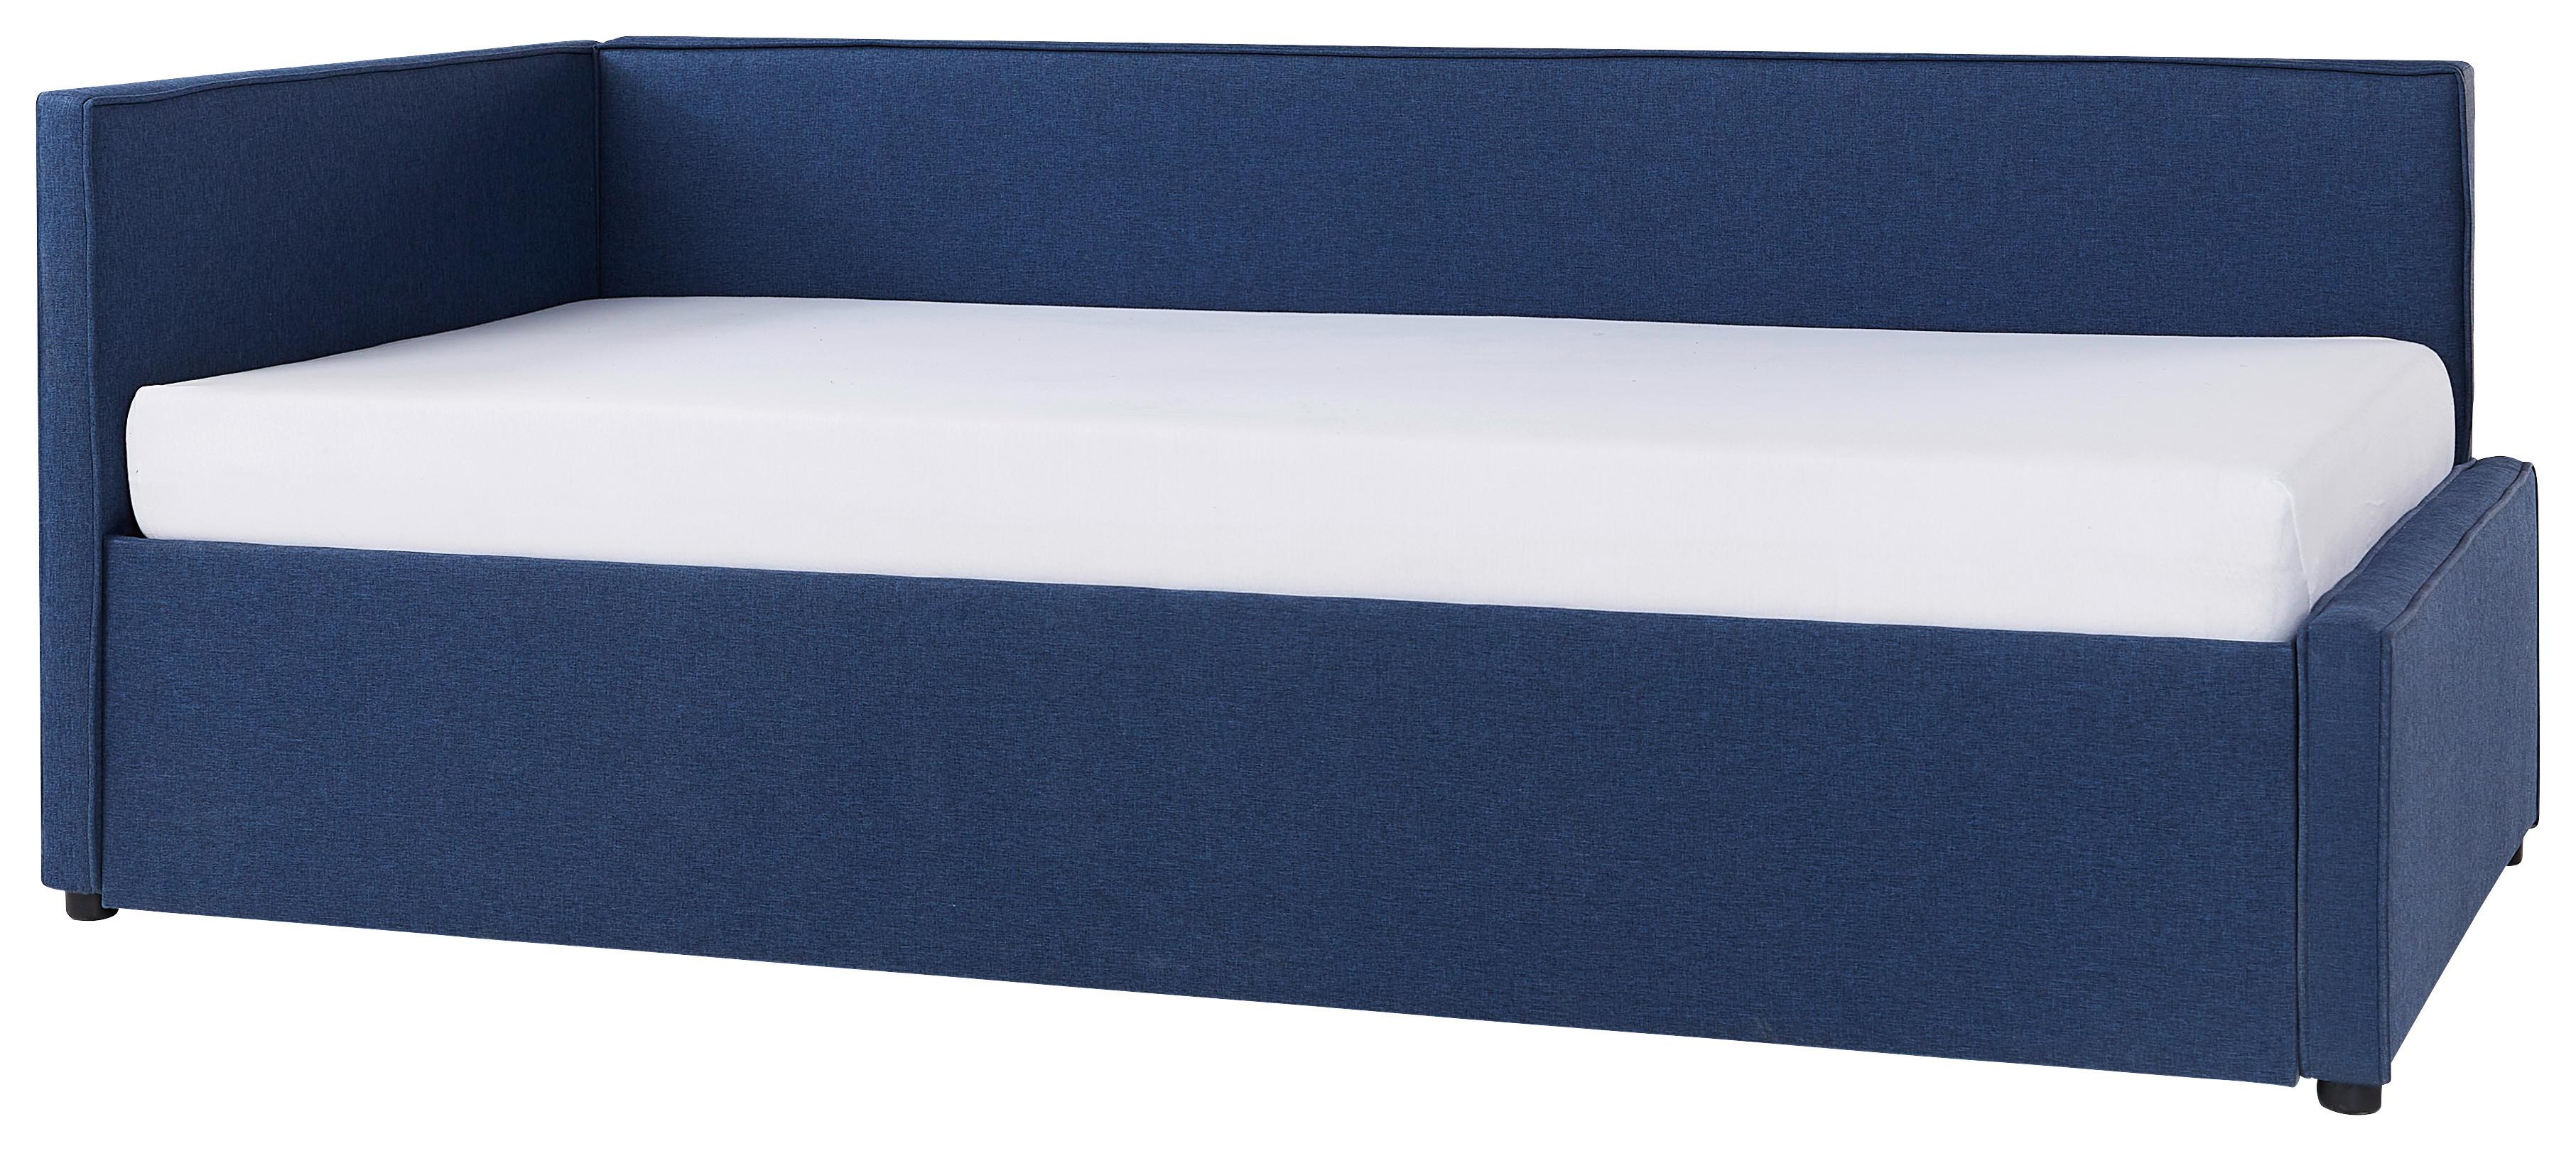 Ausziehbett in Blau ca. 90x200cm - Blau/Schwarz, Konventionell, Holz/Kunststoff (90/200cm) - Modern Living